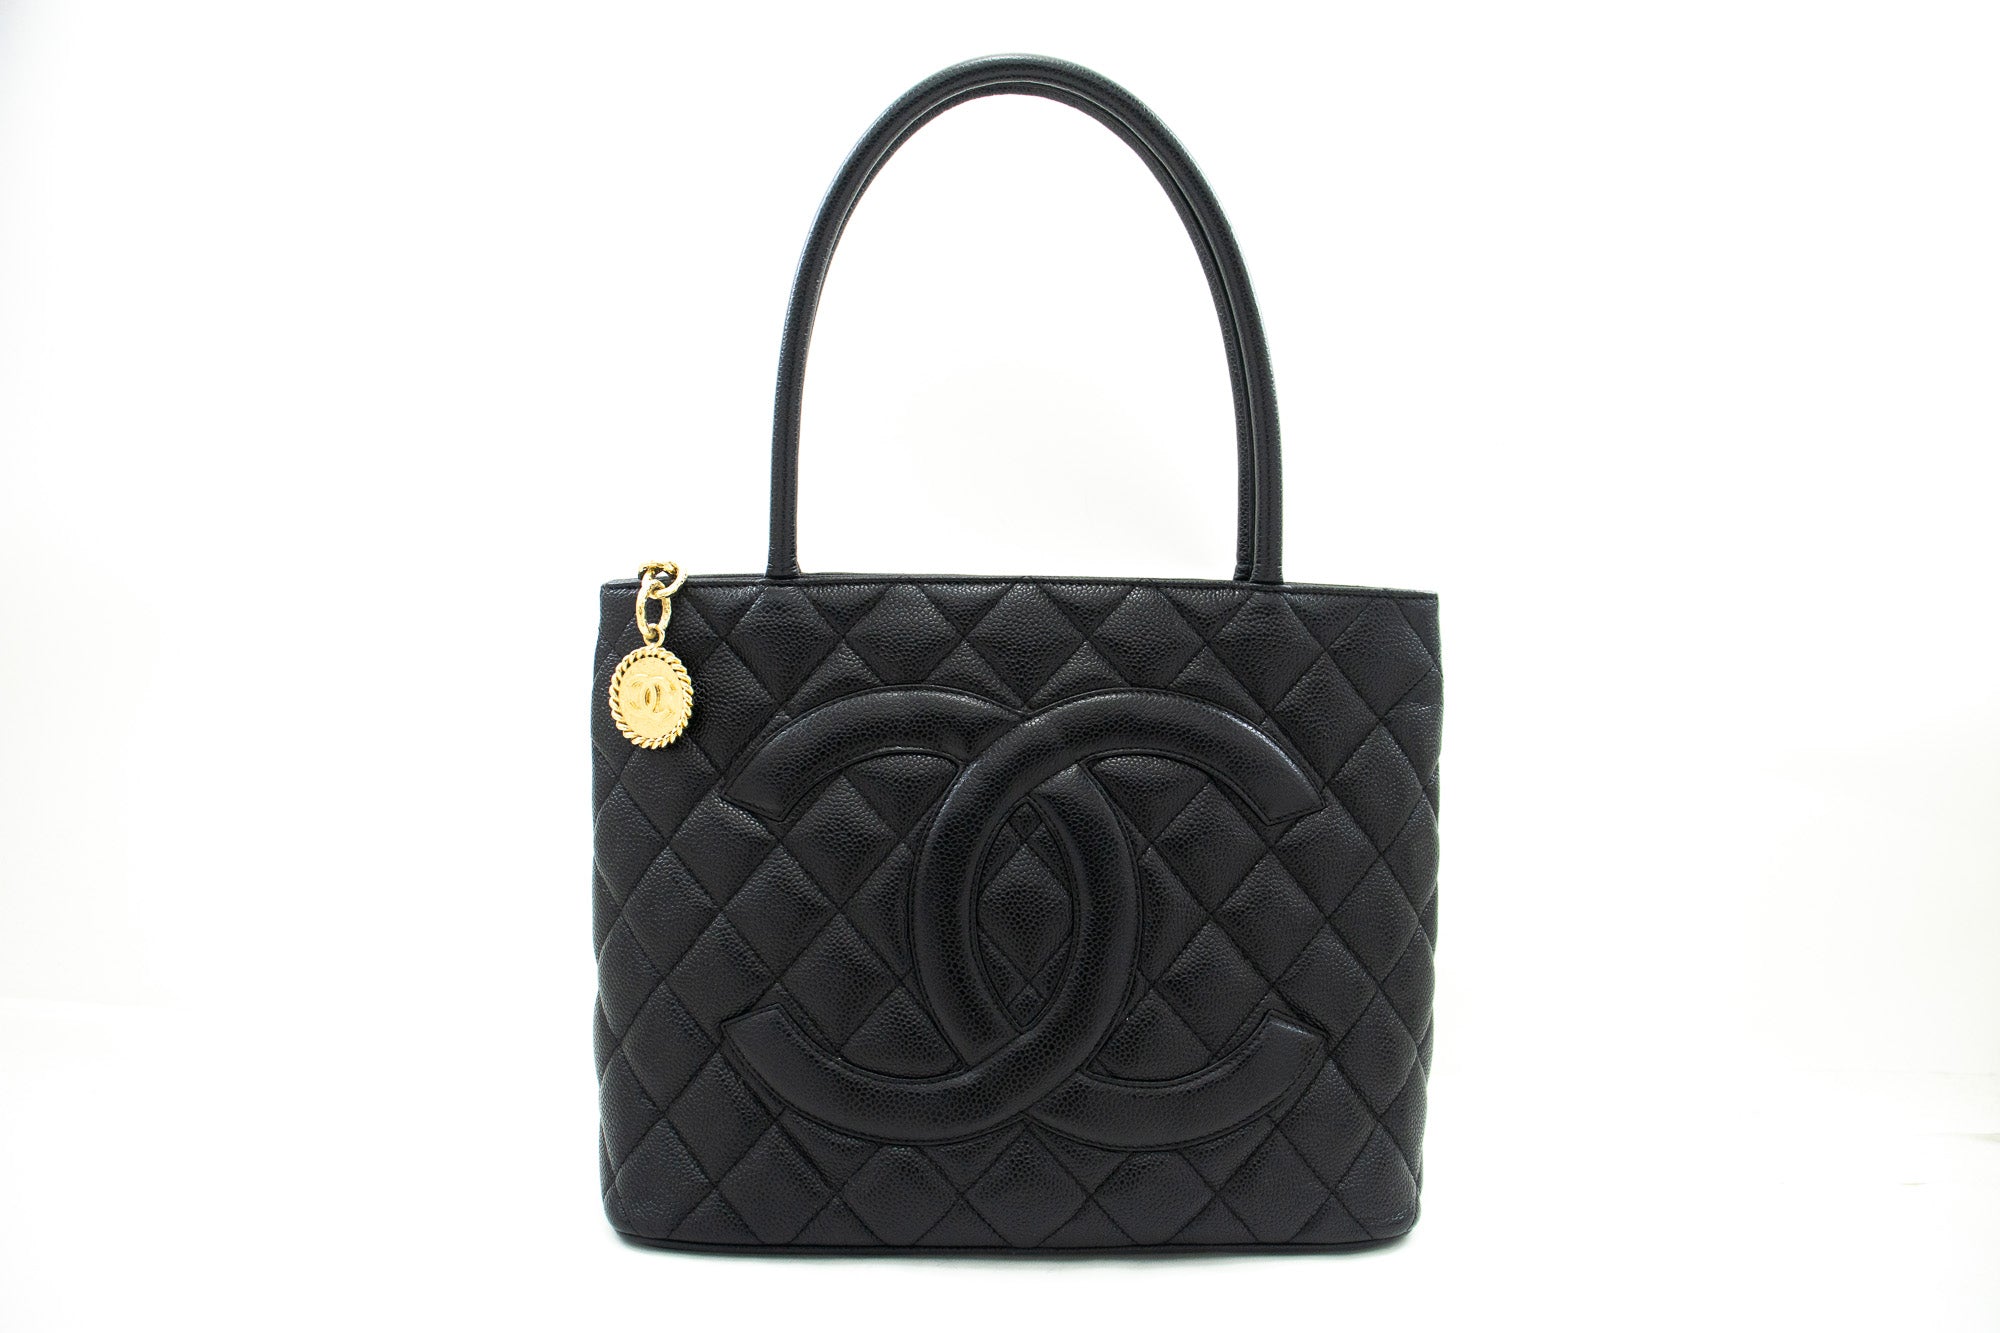 CHANEL Gold Medallion Caviar Shoulder Bag Shopping Tote Black i53